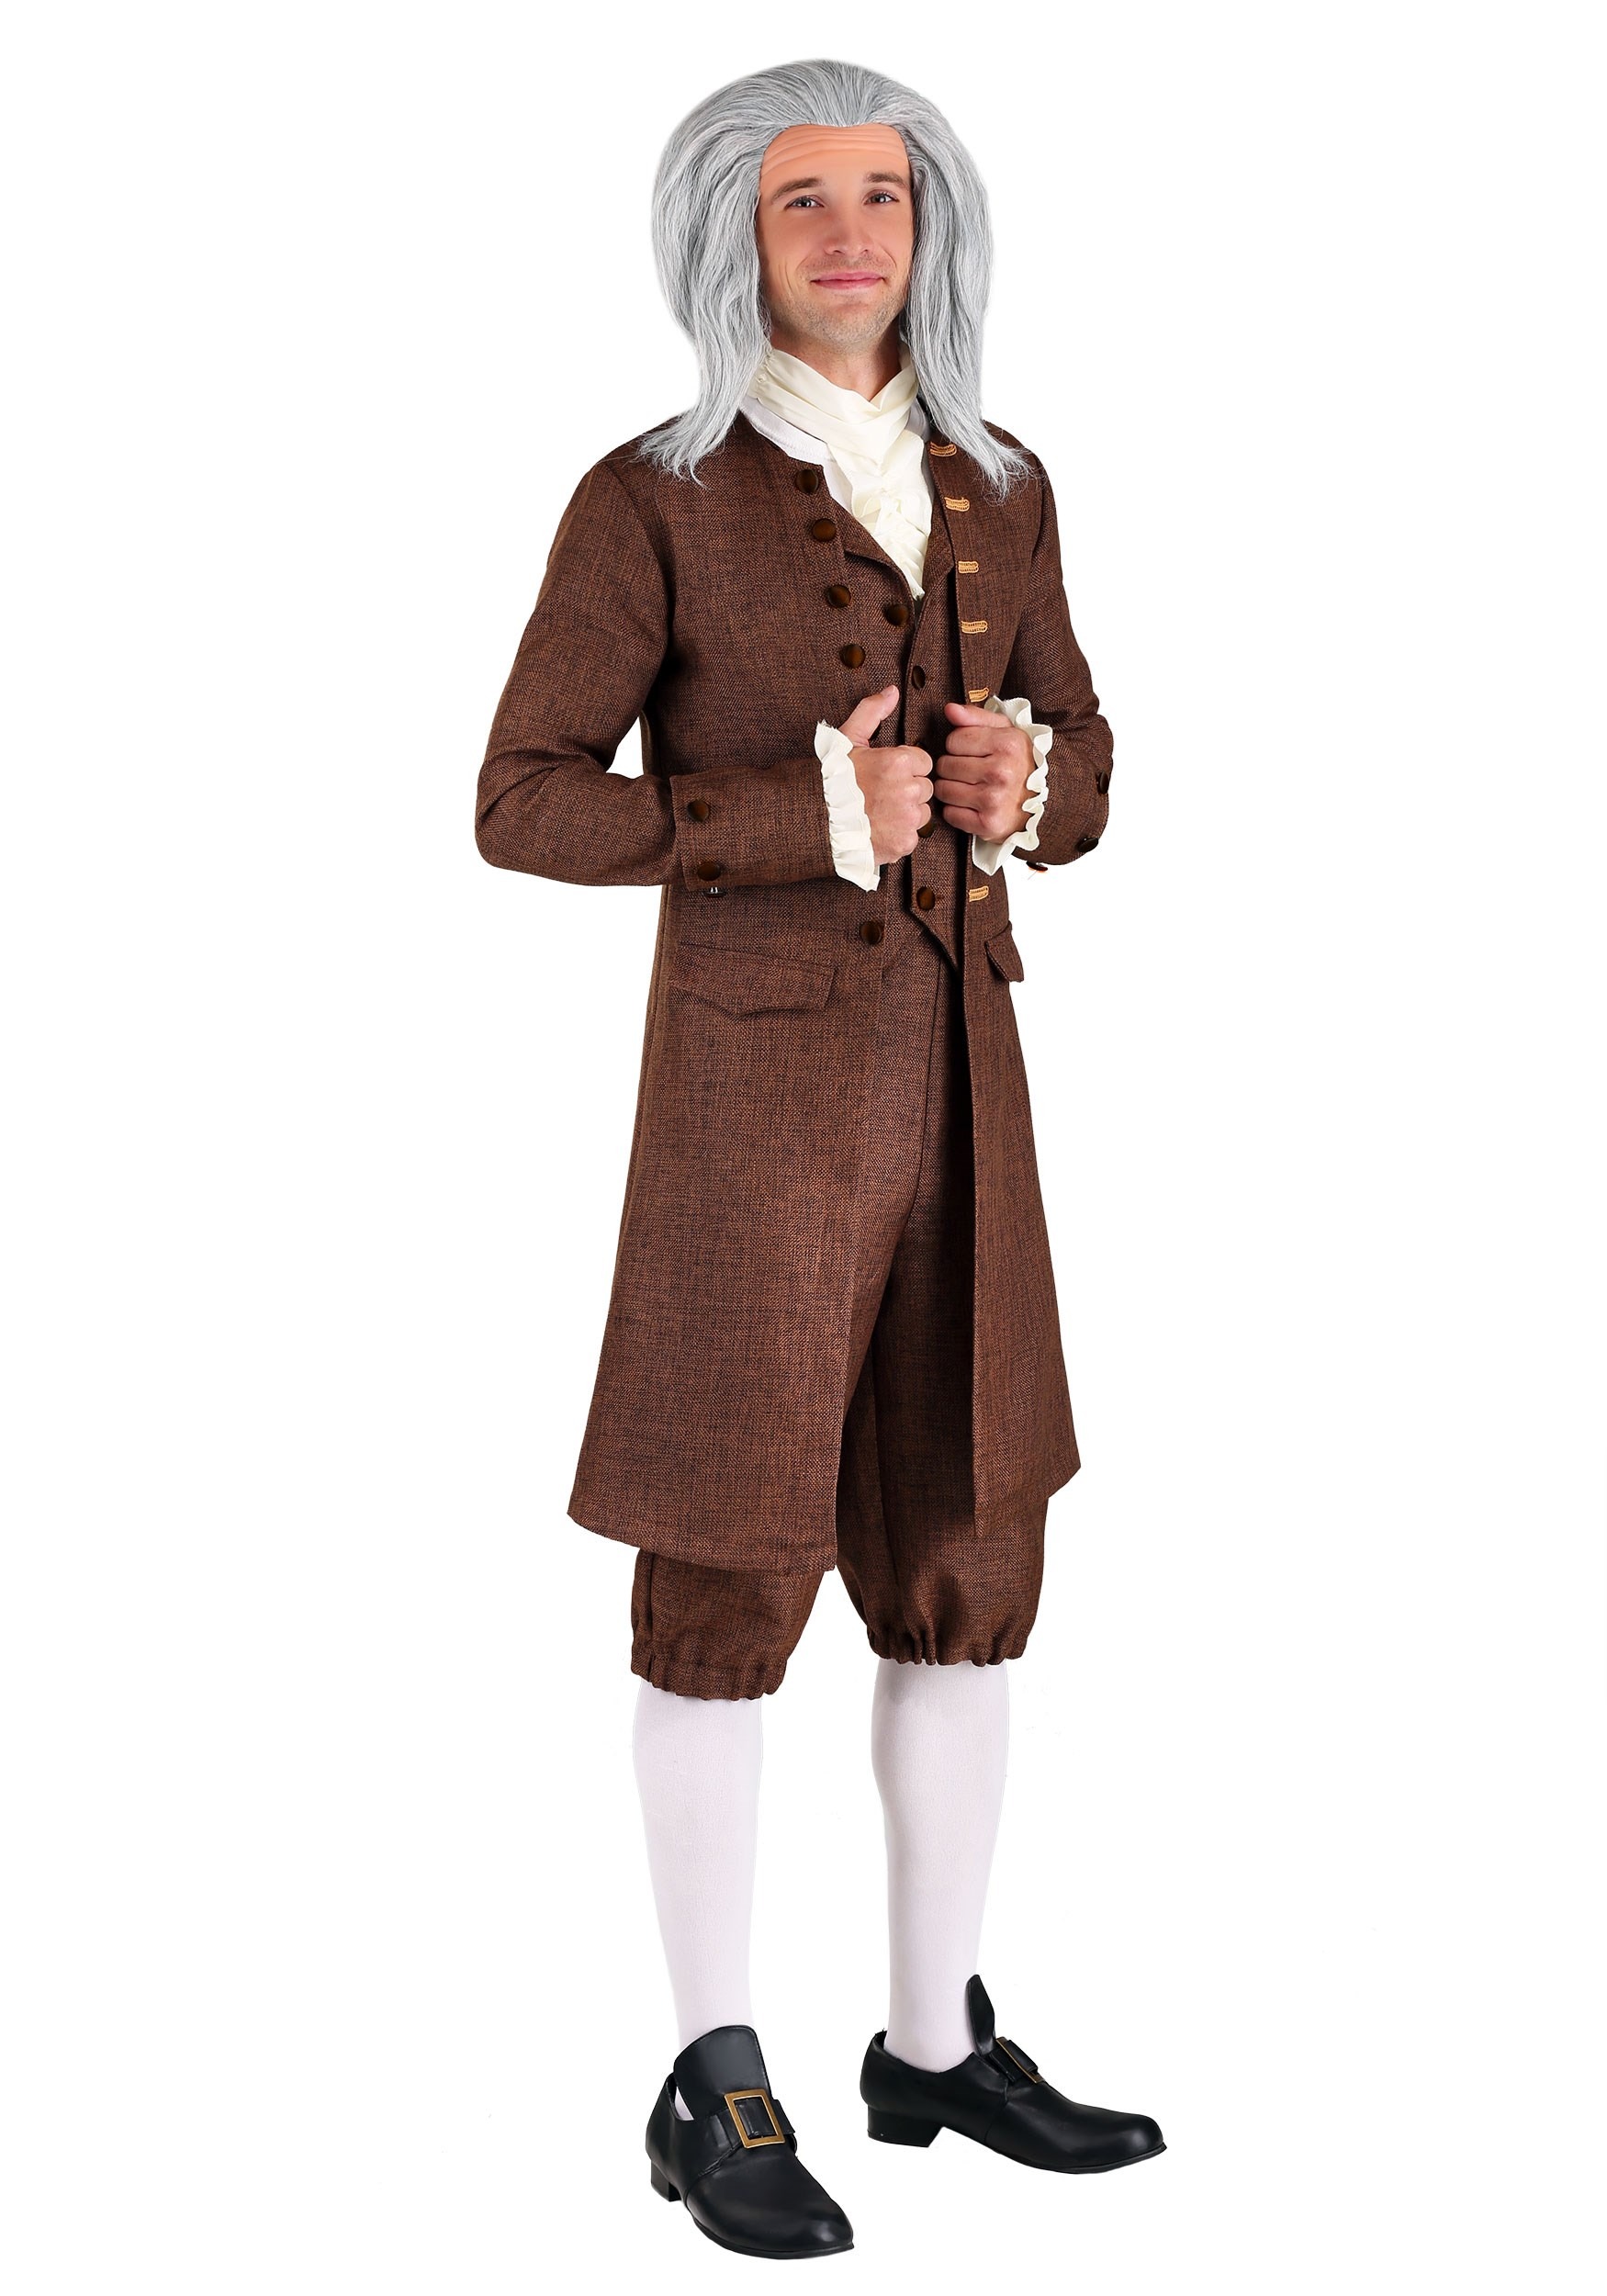 Colonial Benjamin Franklin Costume For Men's